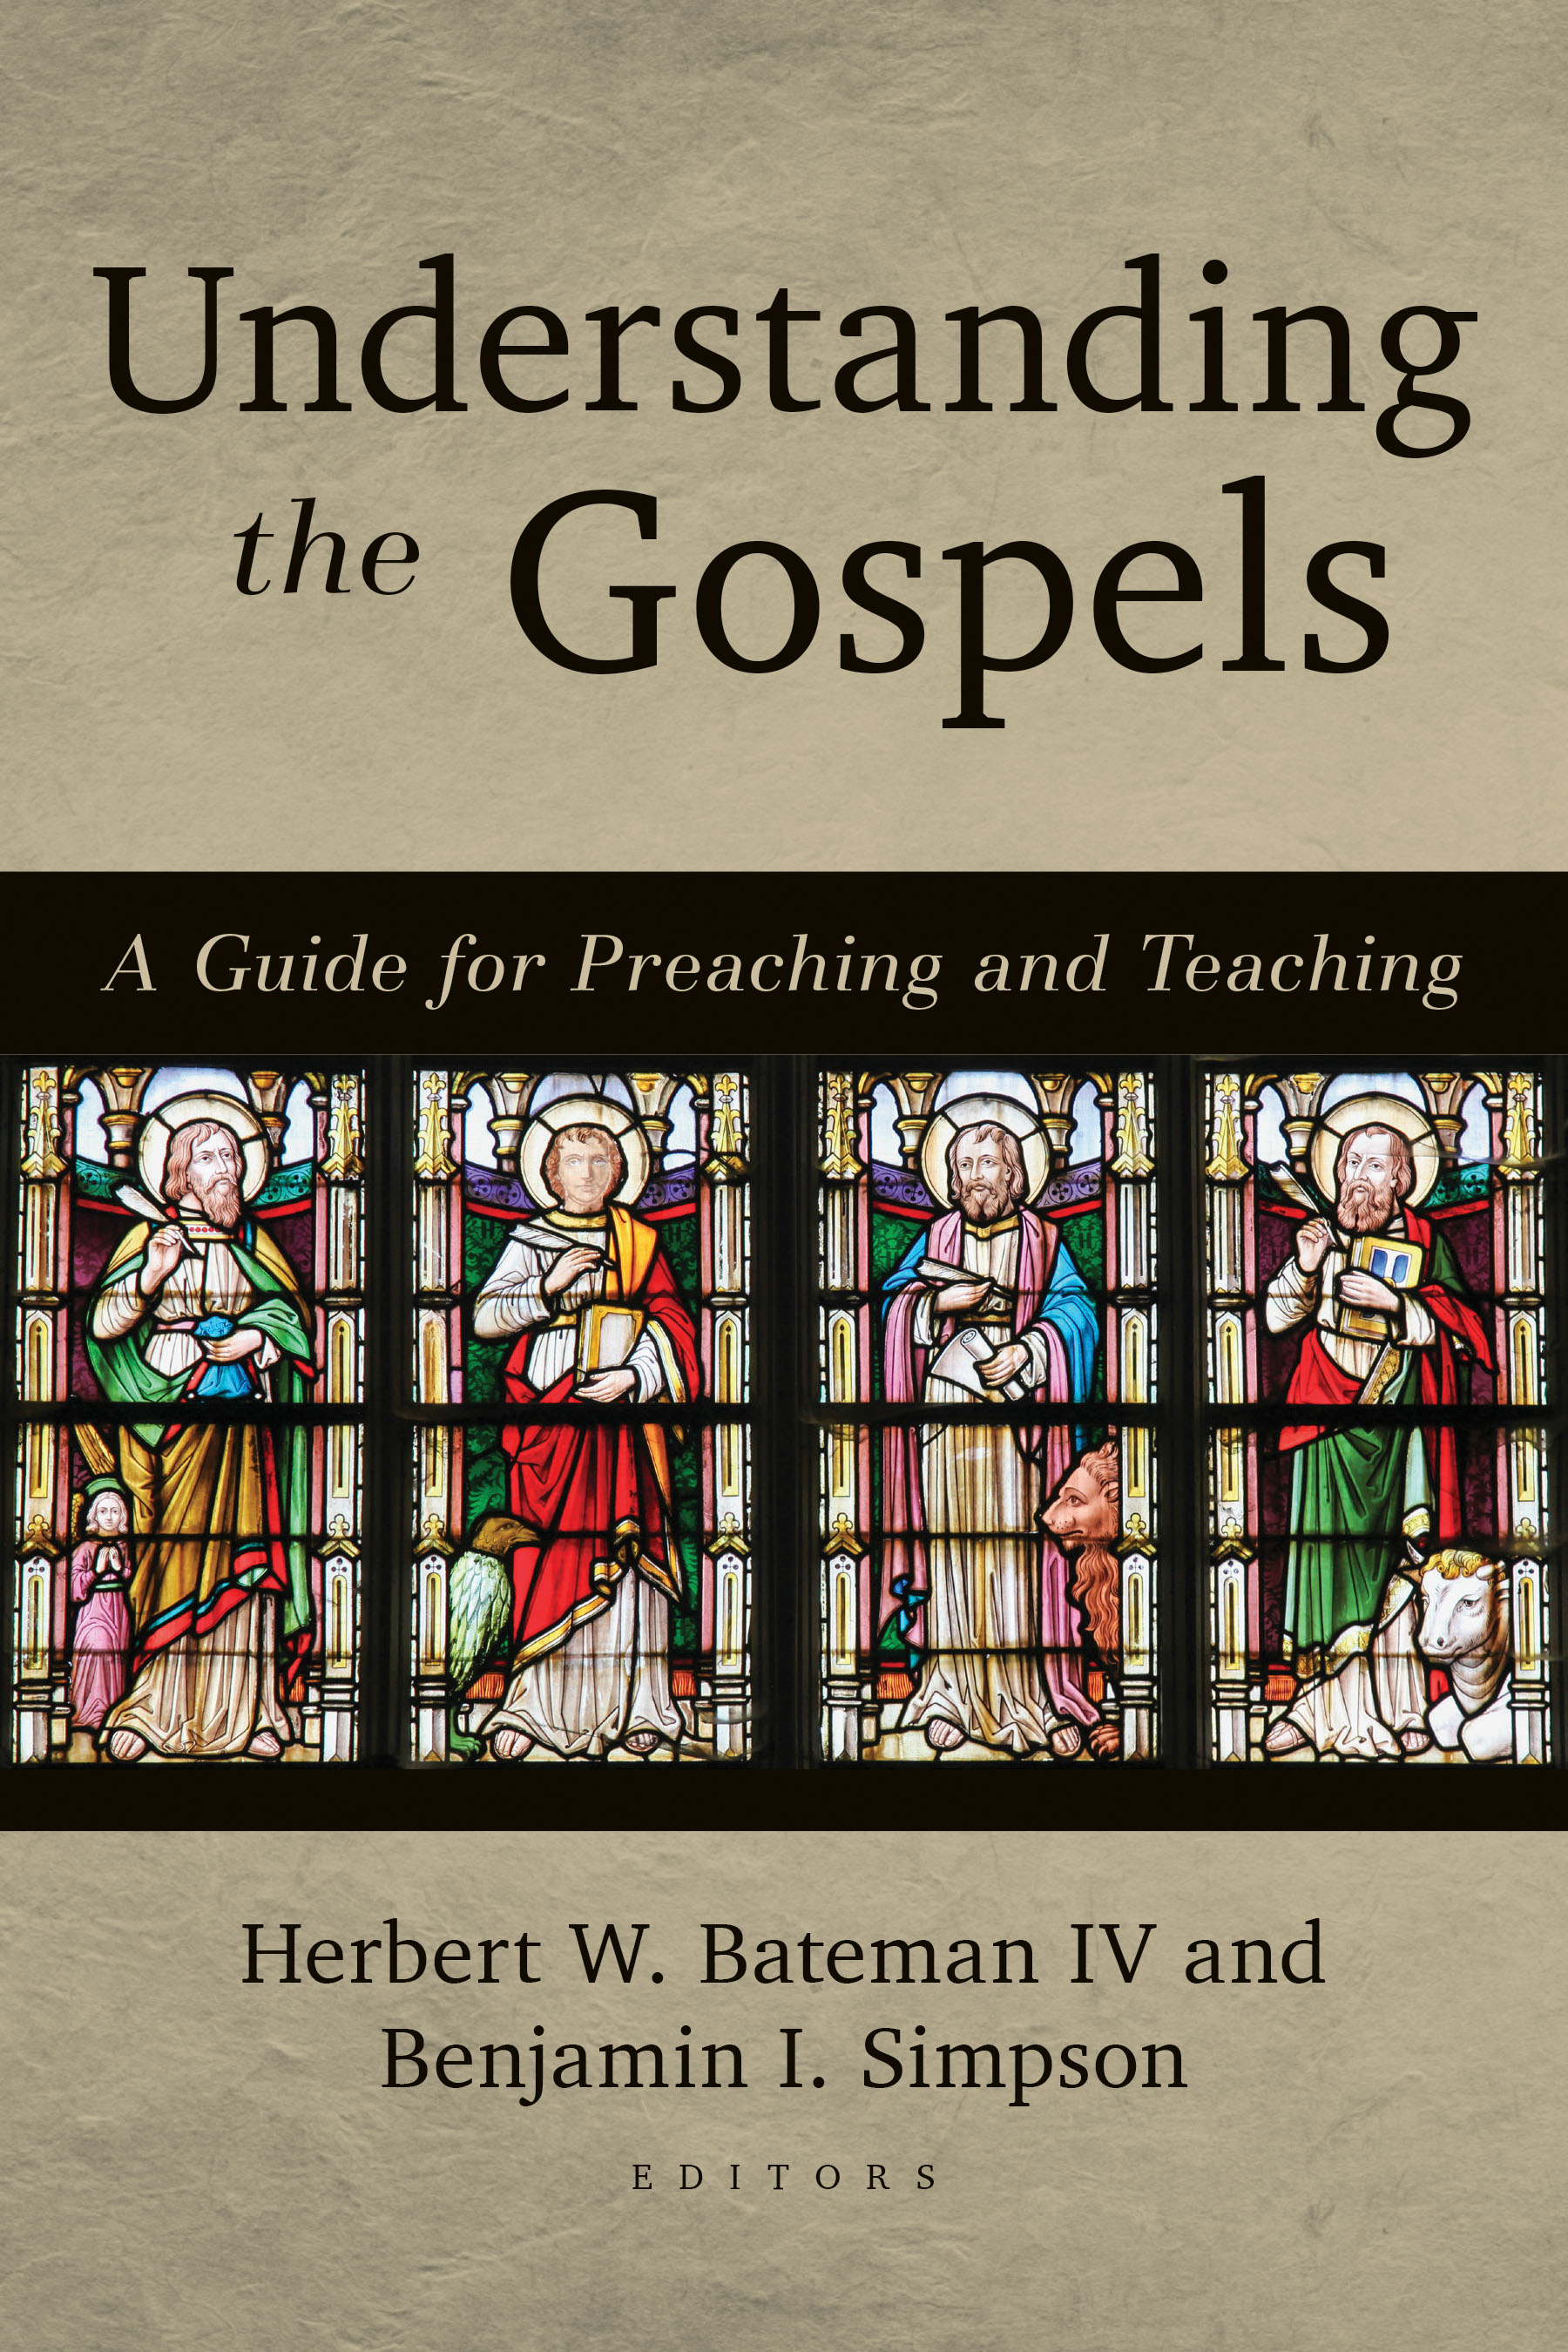 Understanding the Gospels